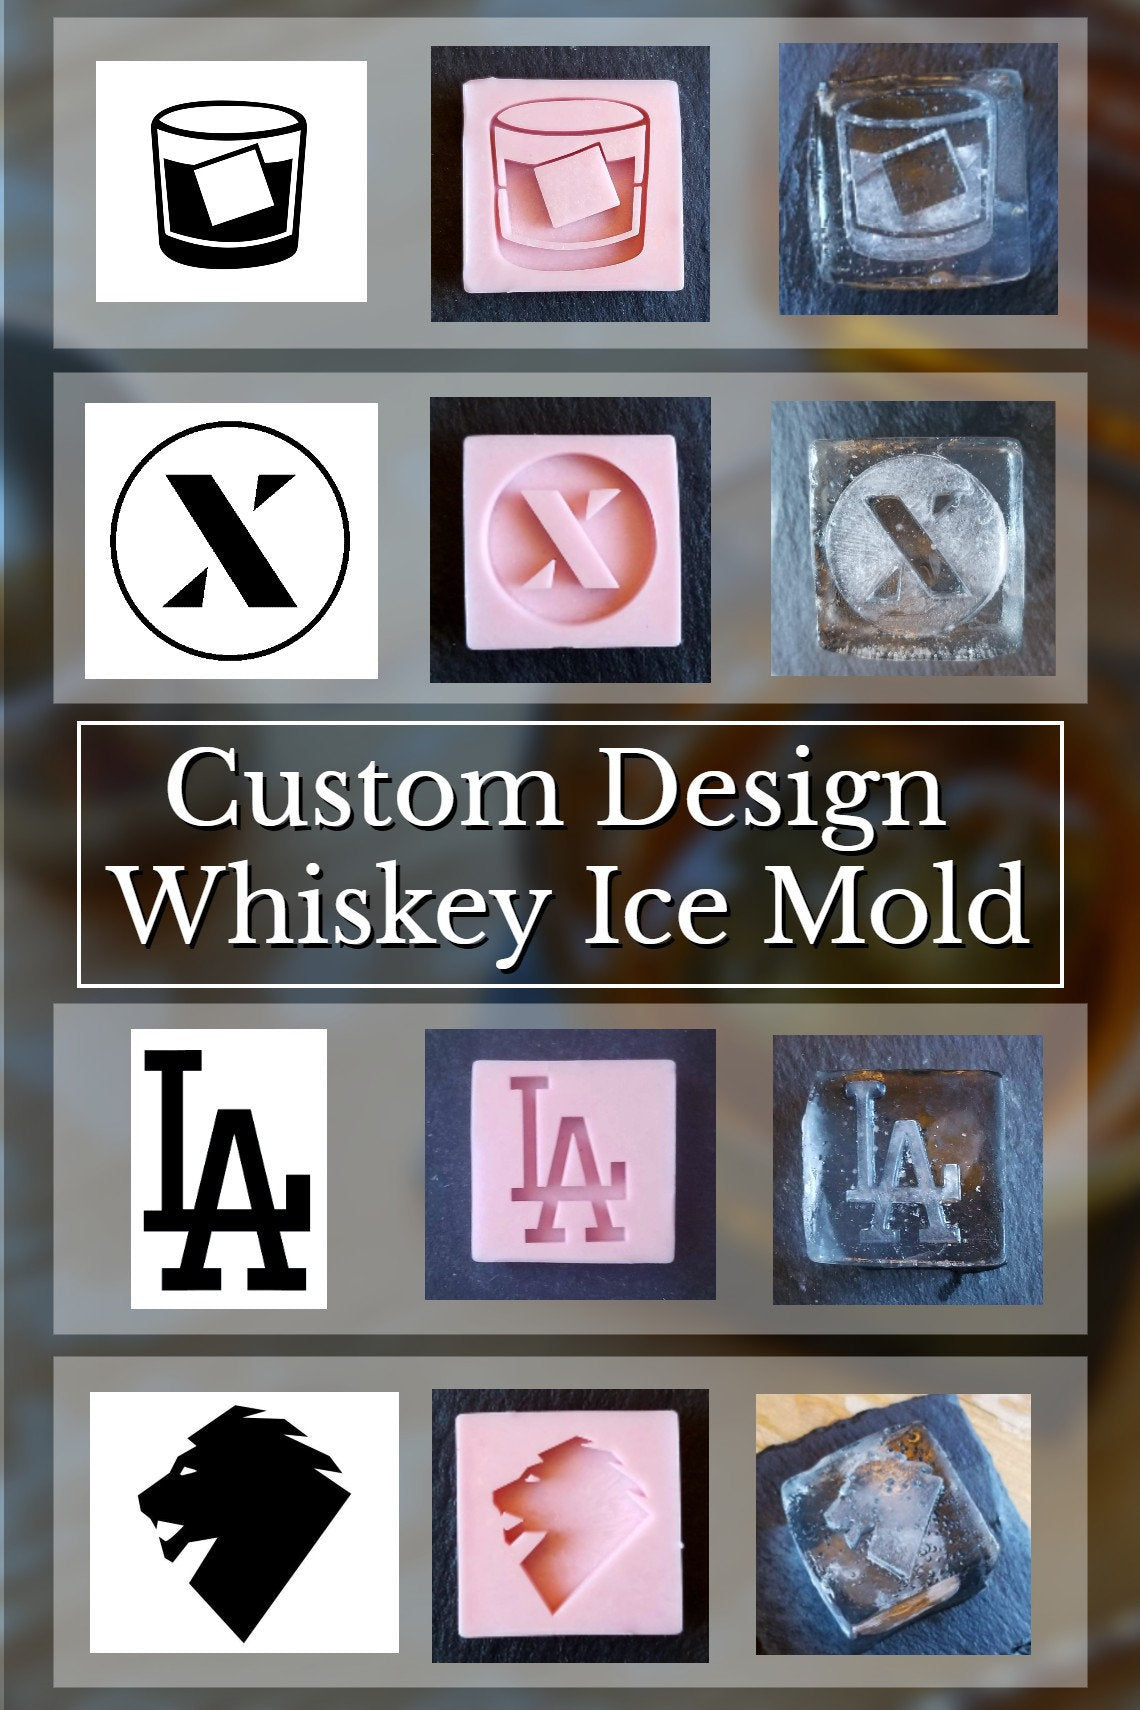 Custom design whiskey ice mold, Ice cubes based on your image, Logo ic –  Speakeasy Ice Molds